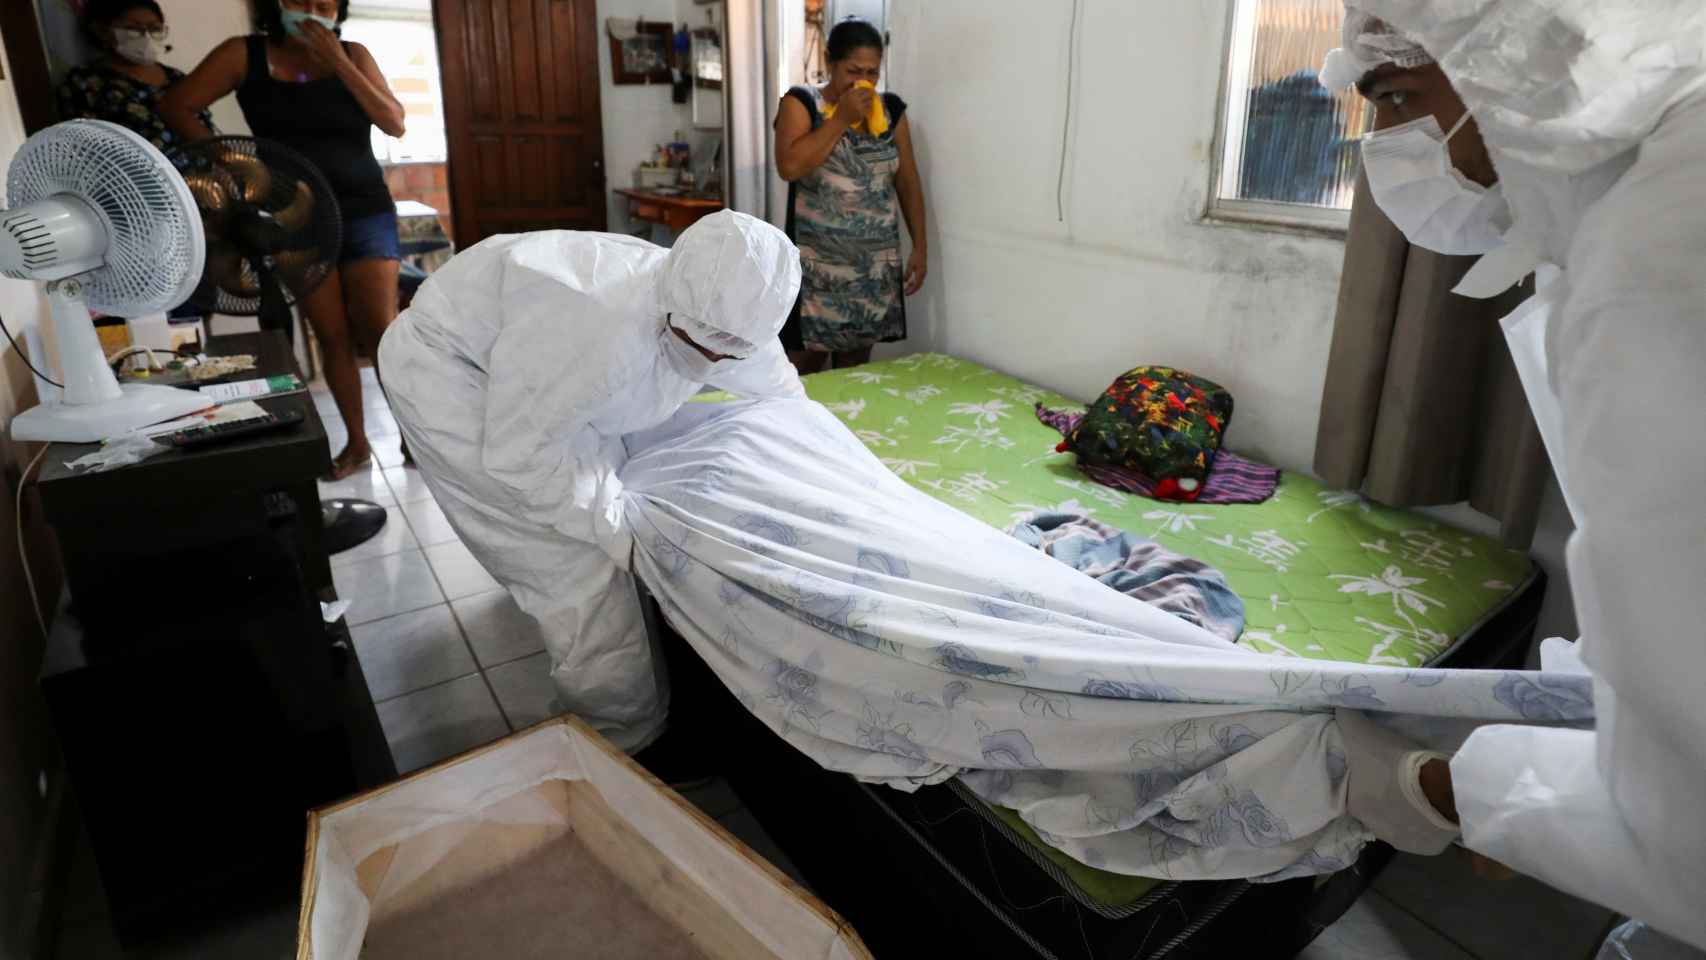 Trabajadores de una funeraria de Manaos retiran el cuerpo de una persona fallecida en su casa.